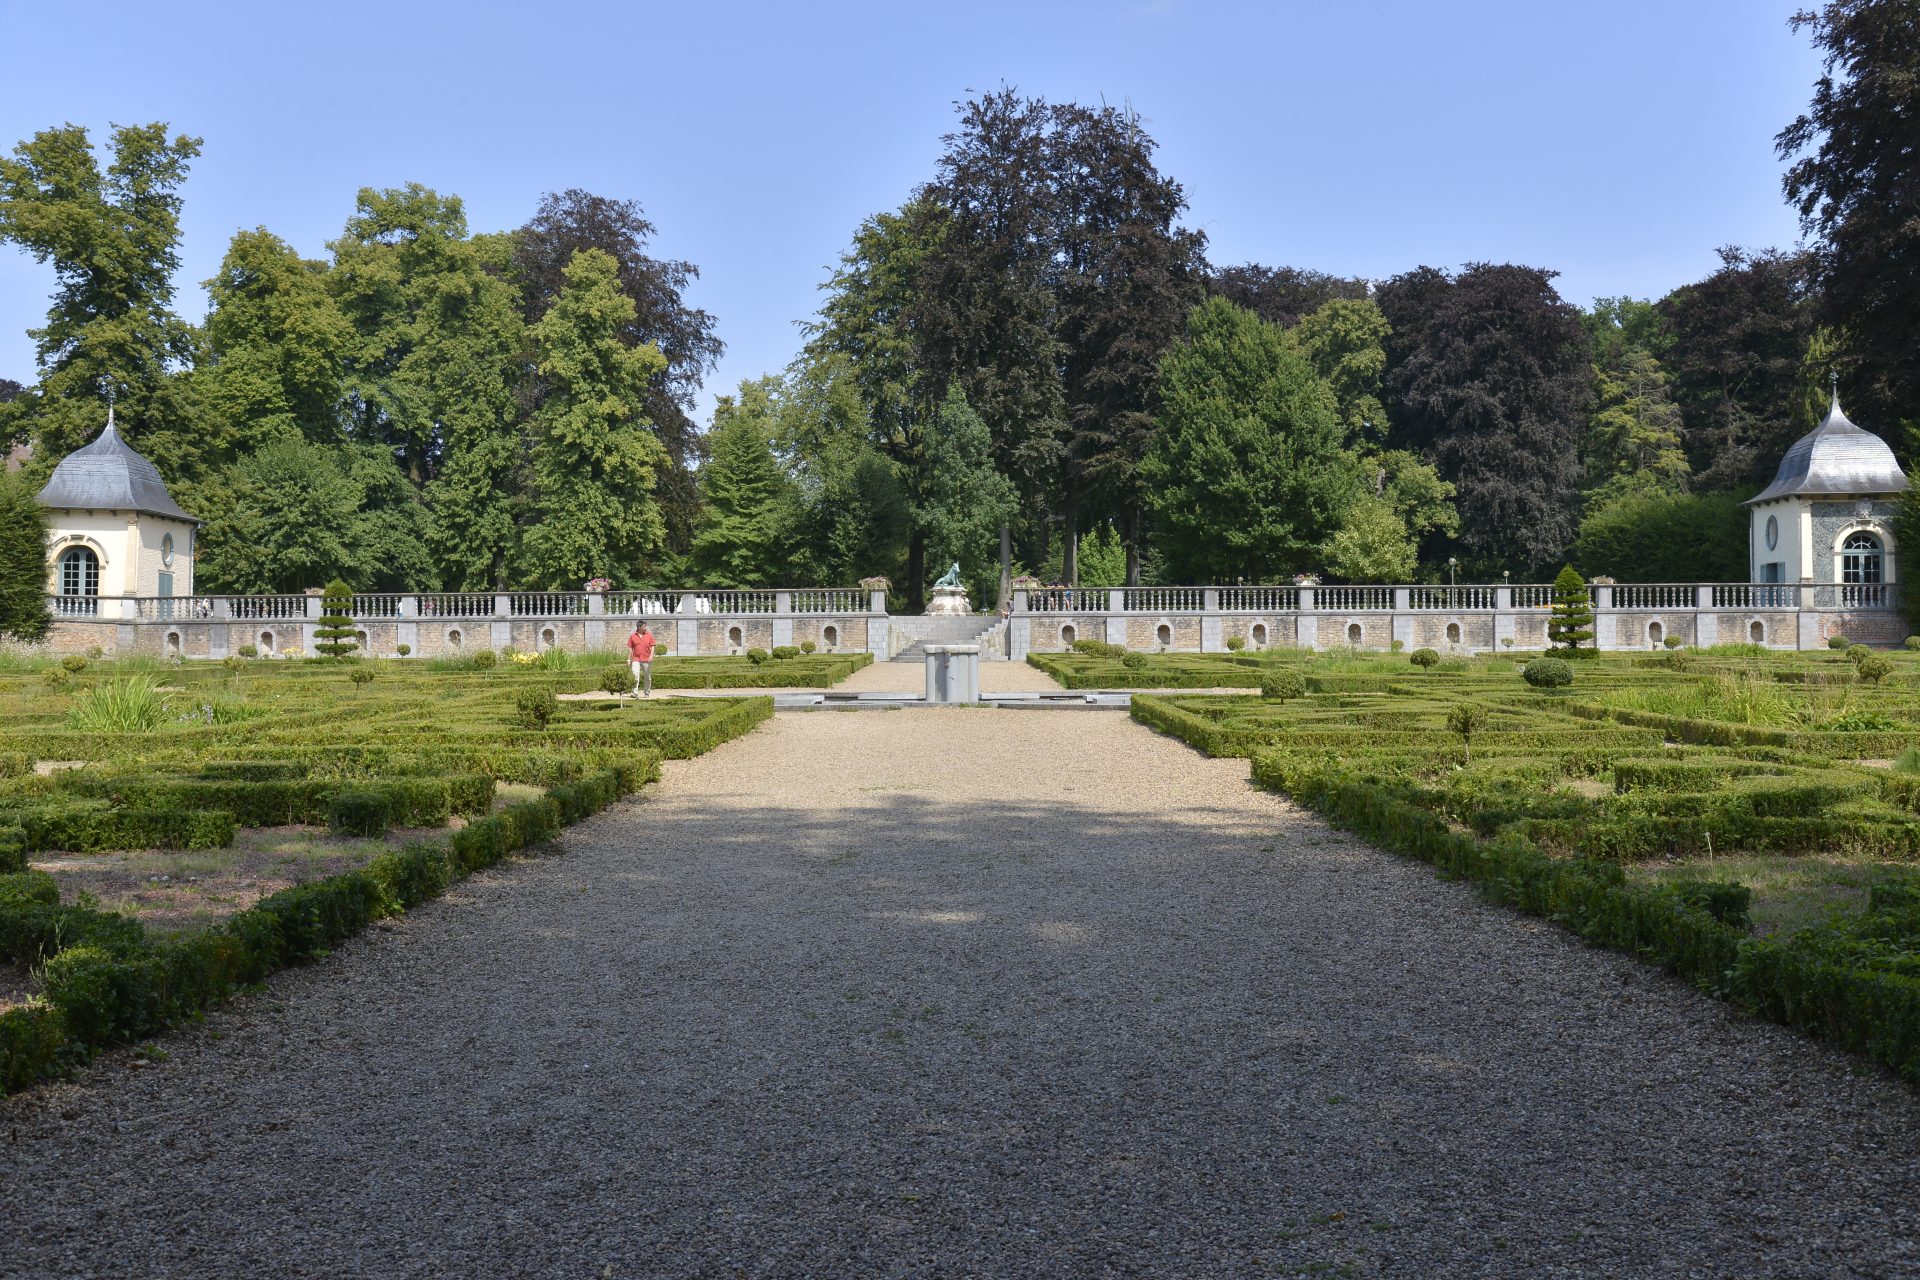 The Aisne-Marne American Cemetery